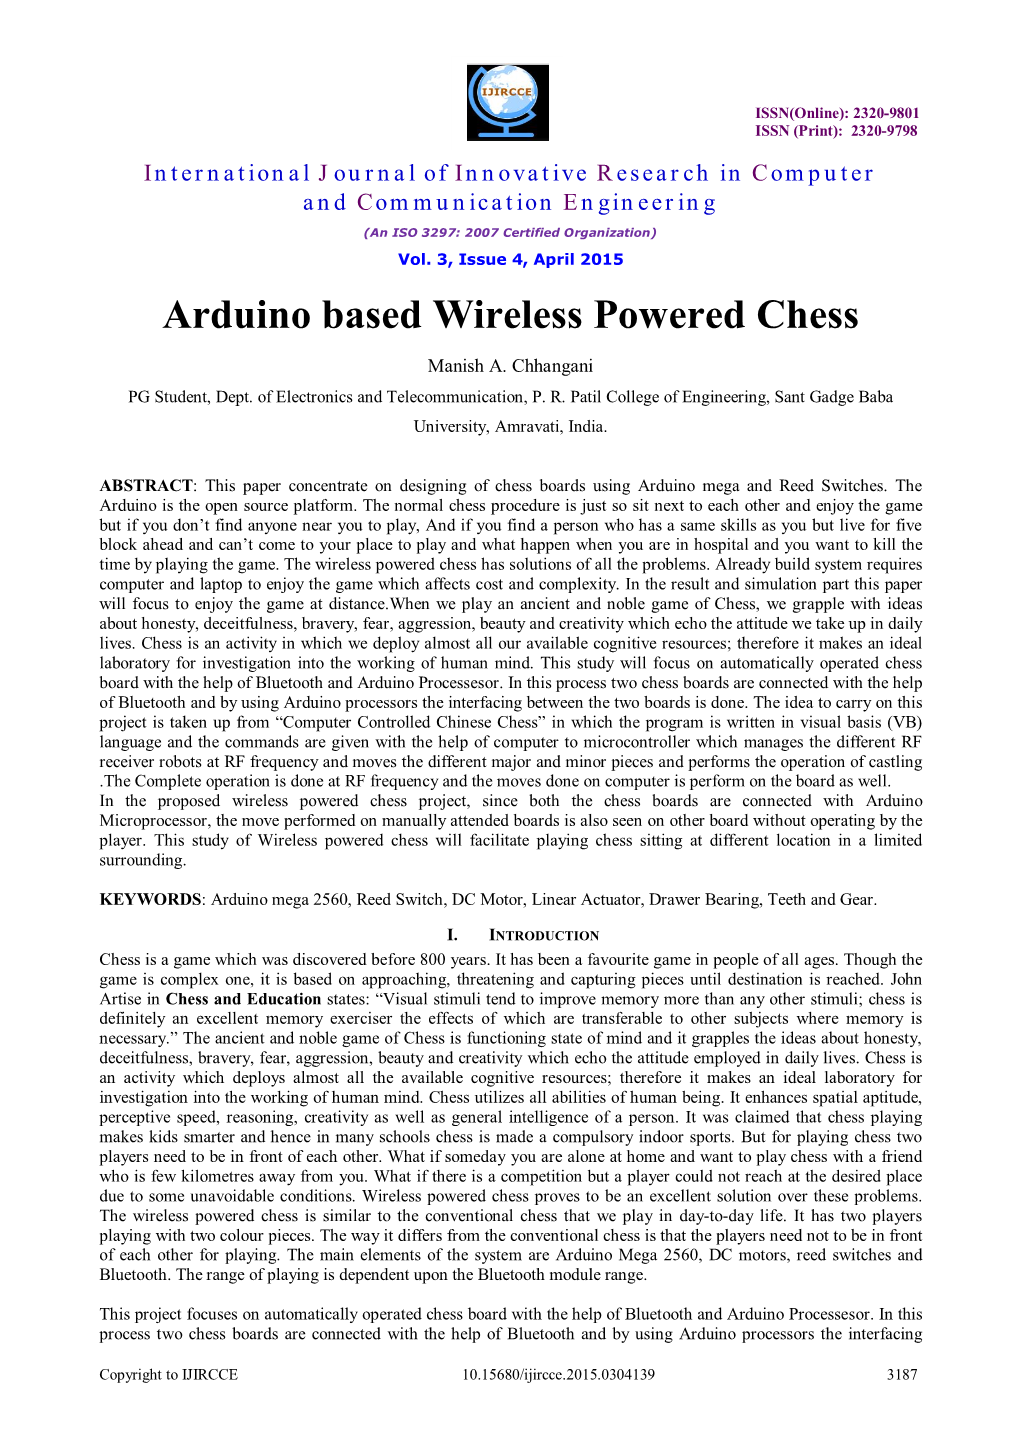 Arduino Based Wireless Powered Chess